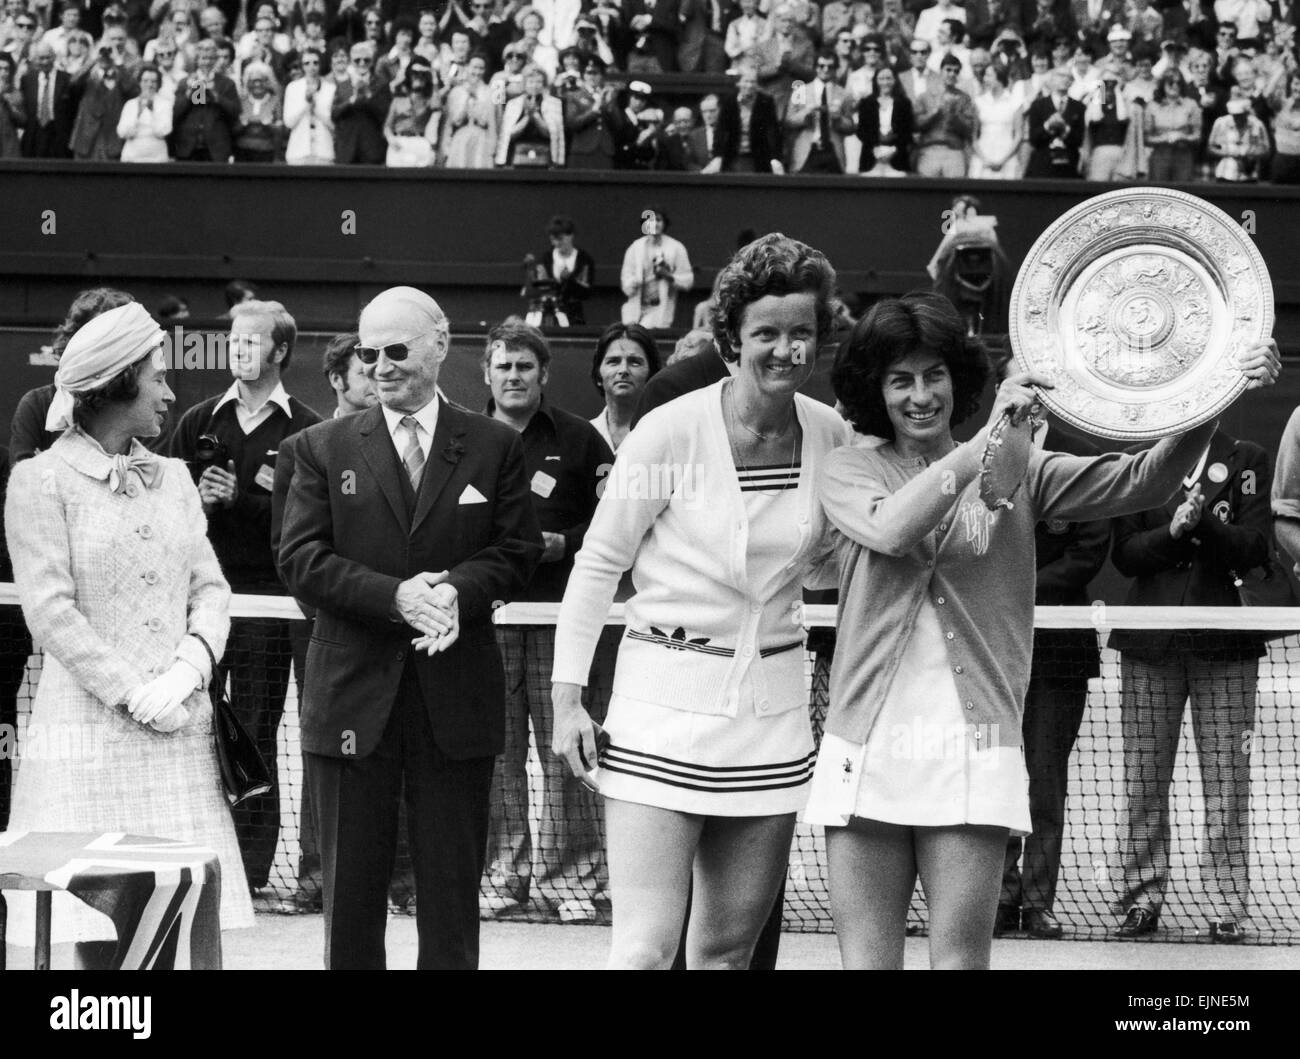 14.000 appassionati di timbratura allietate Virginia Wade alla vittoria nella sua lotta contro l'Olanda di Betty stufa. Ginny, convinti che ella avrebbe vinto ha ricevuto una standing ovation. "È stato come una favola", ha detto. C'era così tanto rumore non riuscivo a sua wat la regina detta'. La nostra immagine mostra; Virginia Wade con il trofeo in posa con Betty stufa mentre la regina della chat con un ufficiale di Wimbledon in background. 4 Luglio 1977 Foto Stock